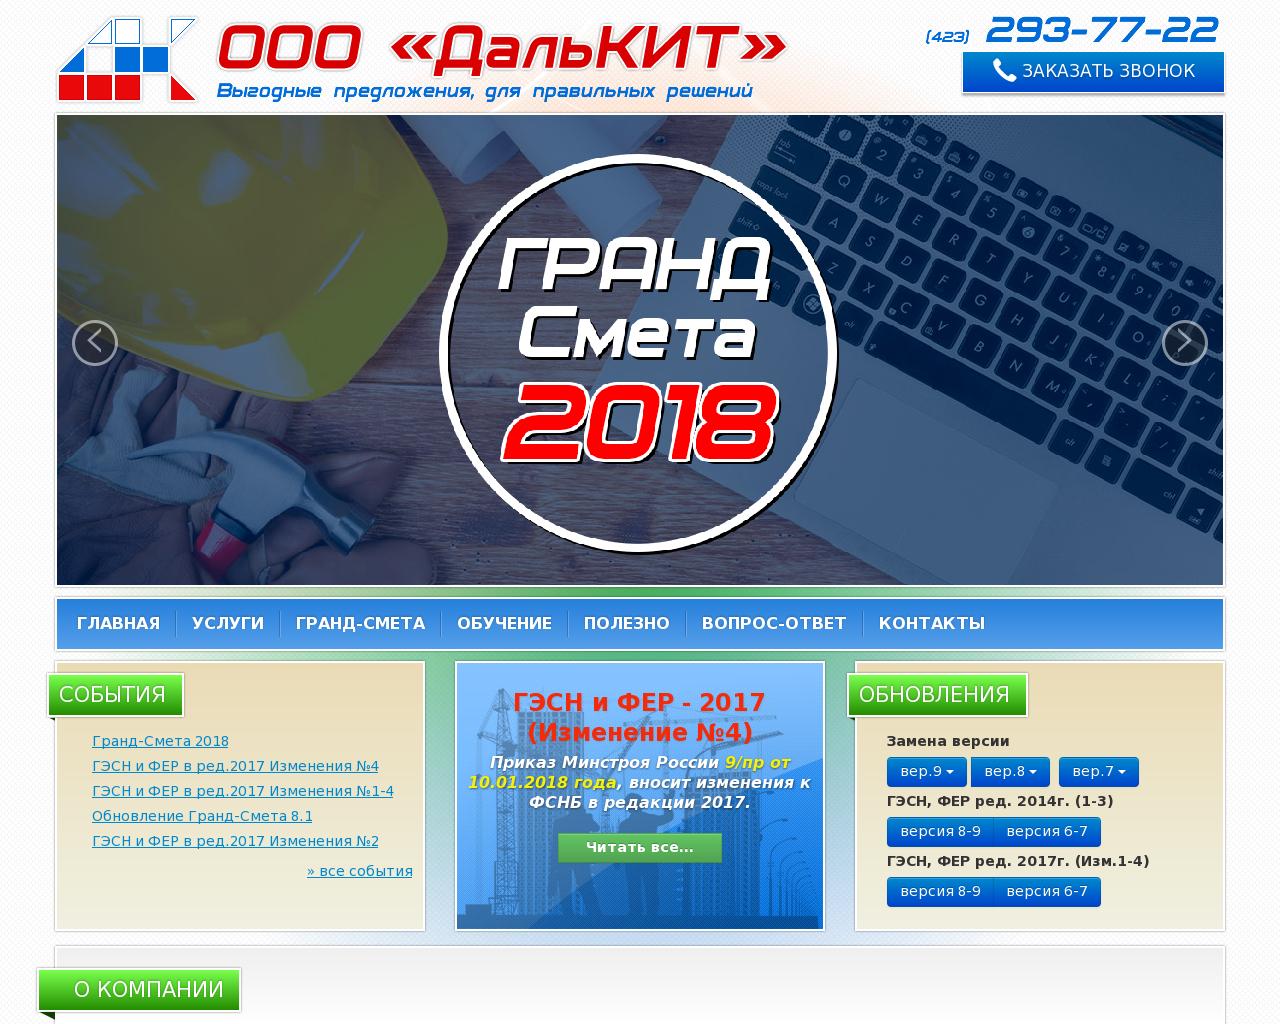 Изображение сайта dalkit.ru в разрешении 1280x1024